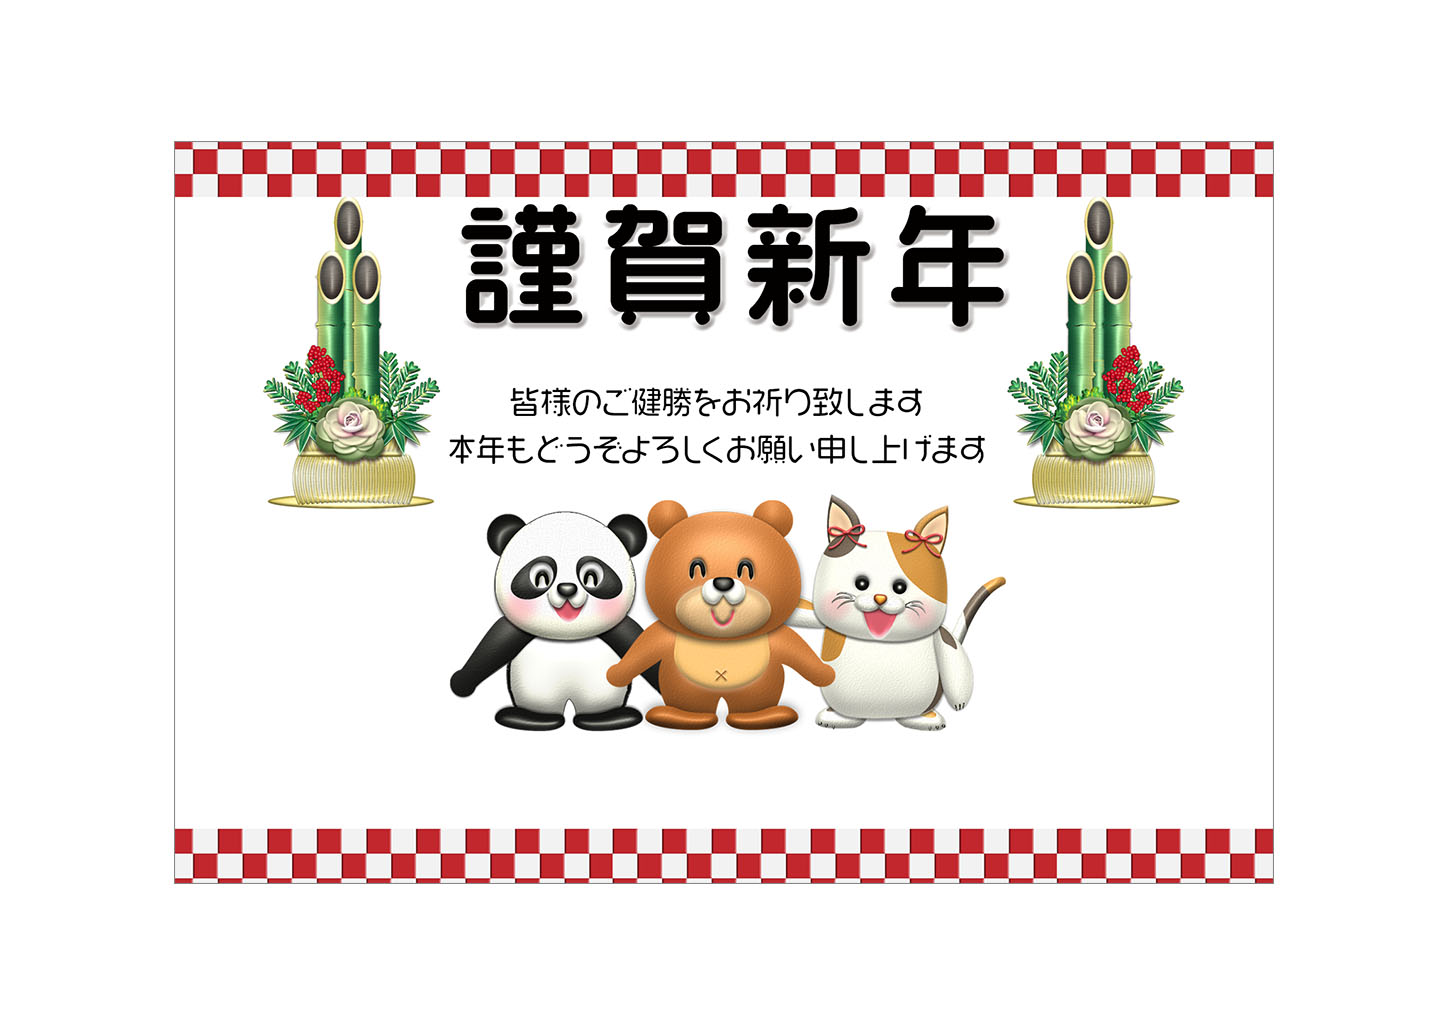 門松とクマ・猫・パンダのキャラクター年賀状